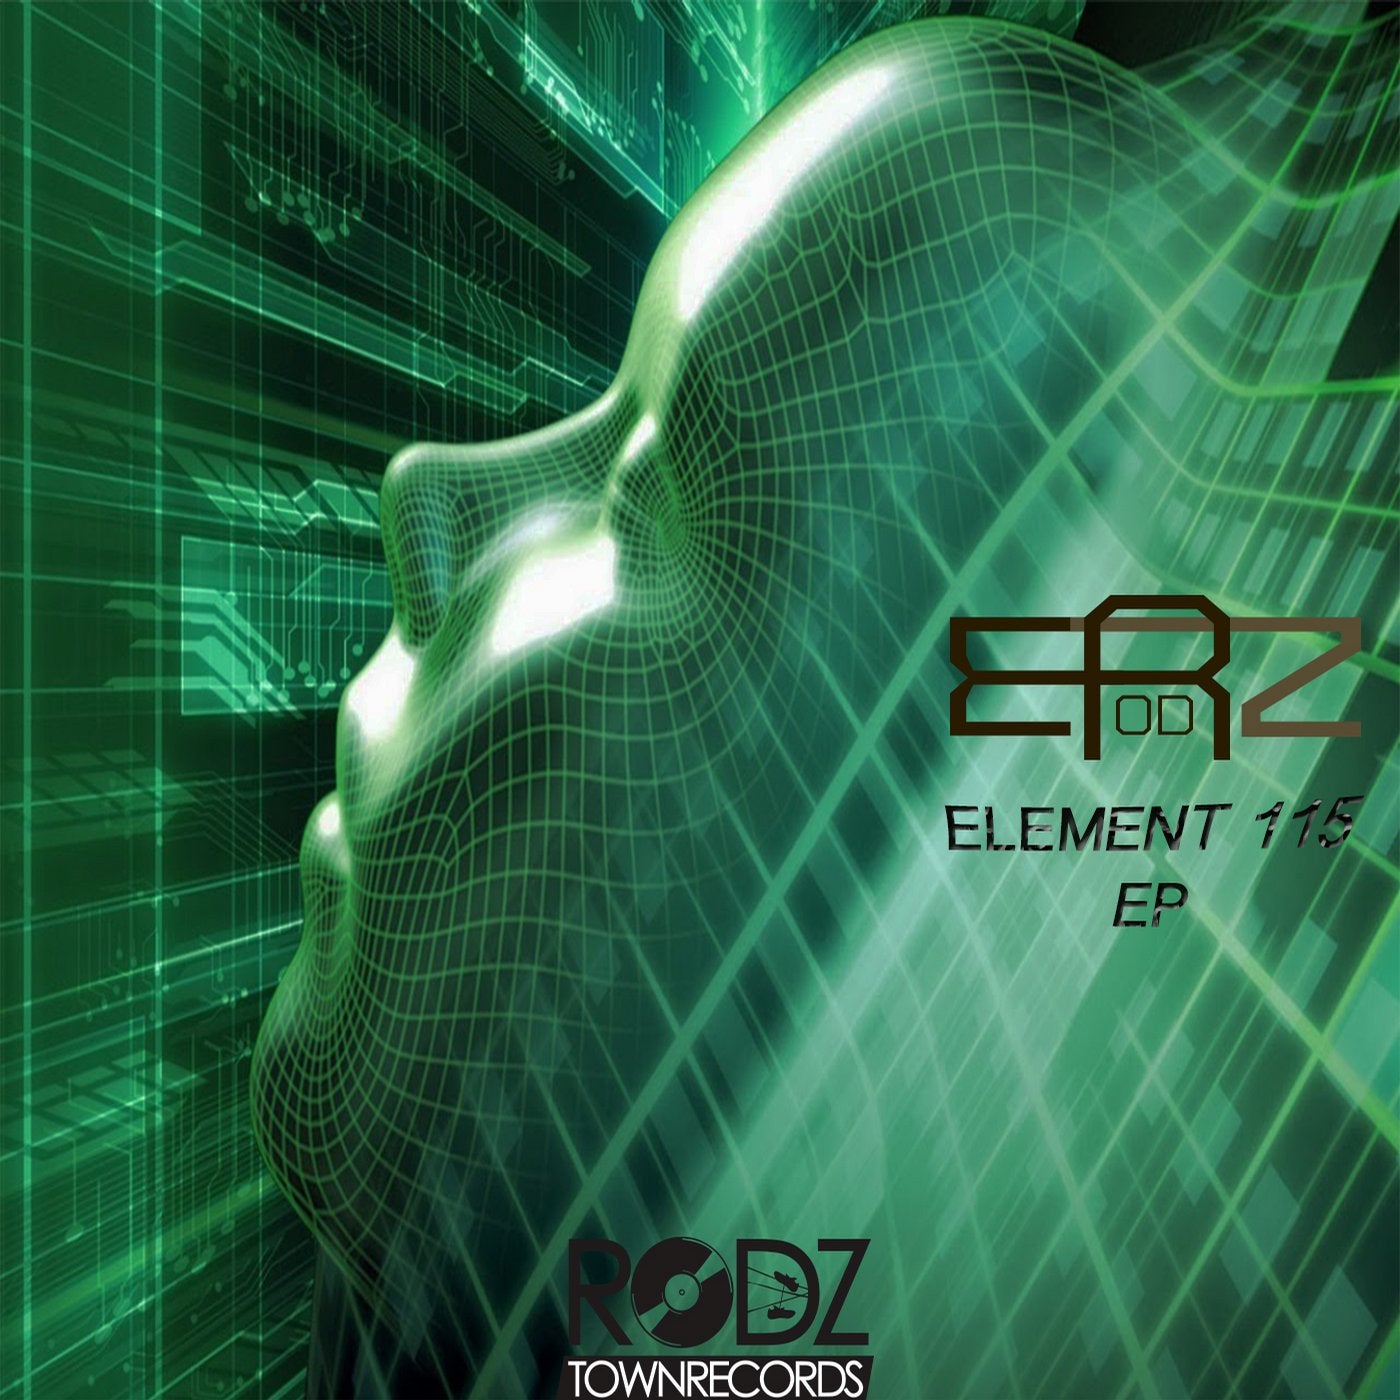 Element 115 EP